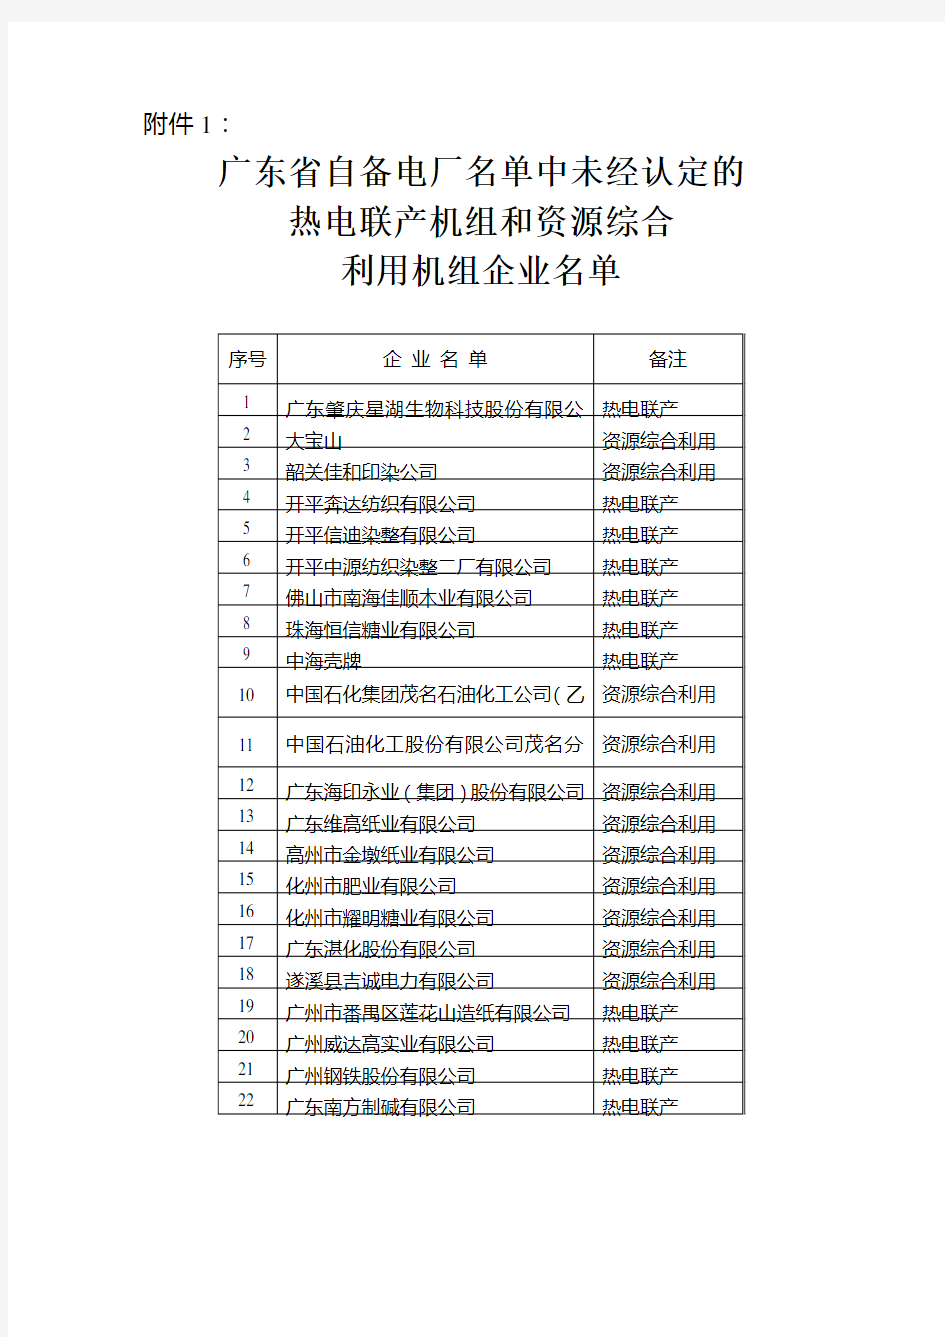 广东省自备电厂名单